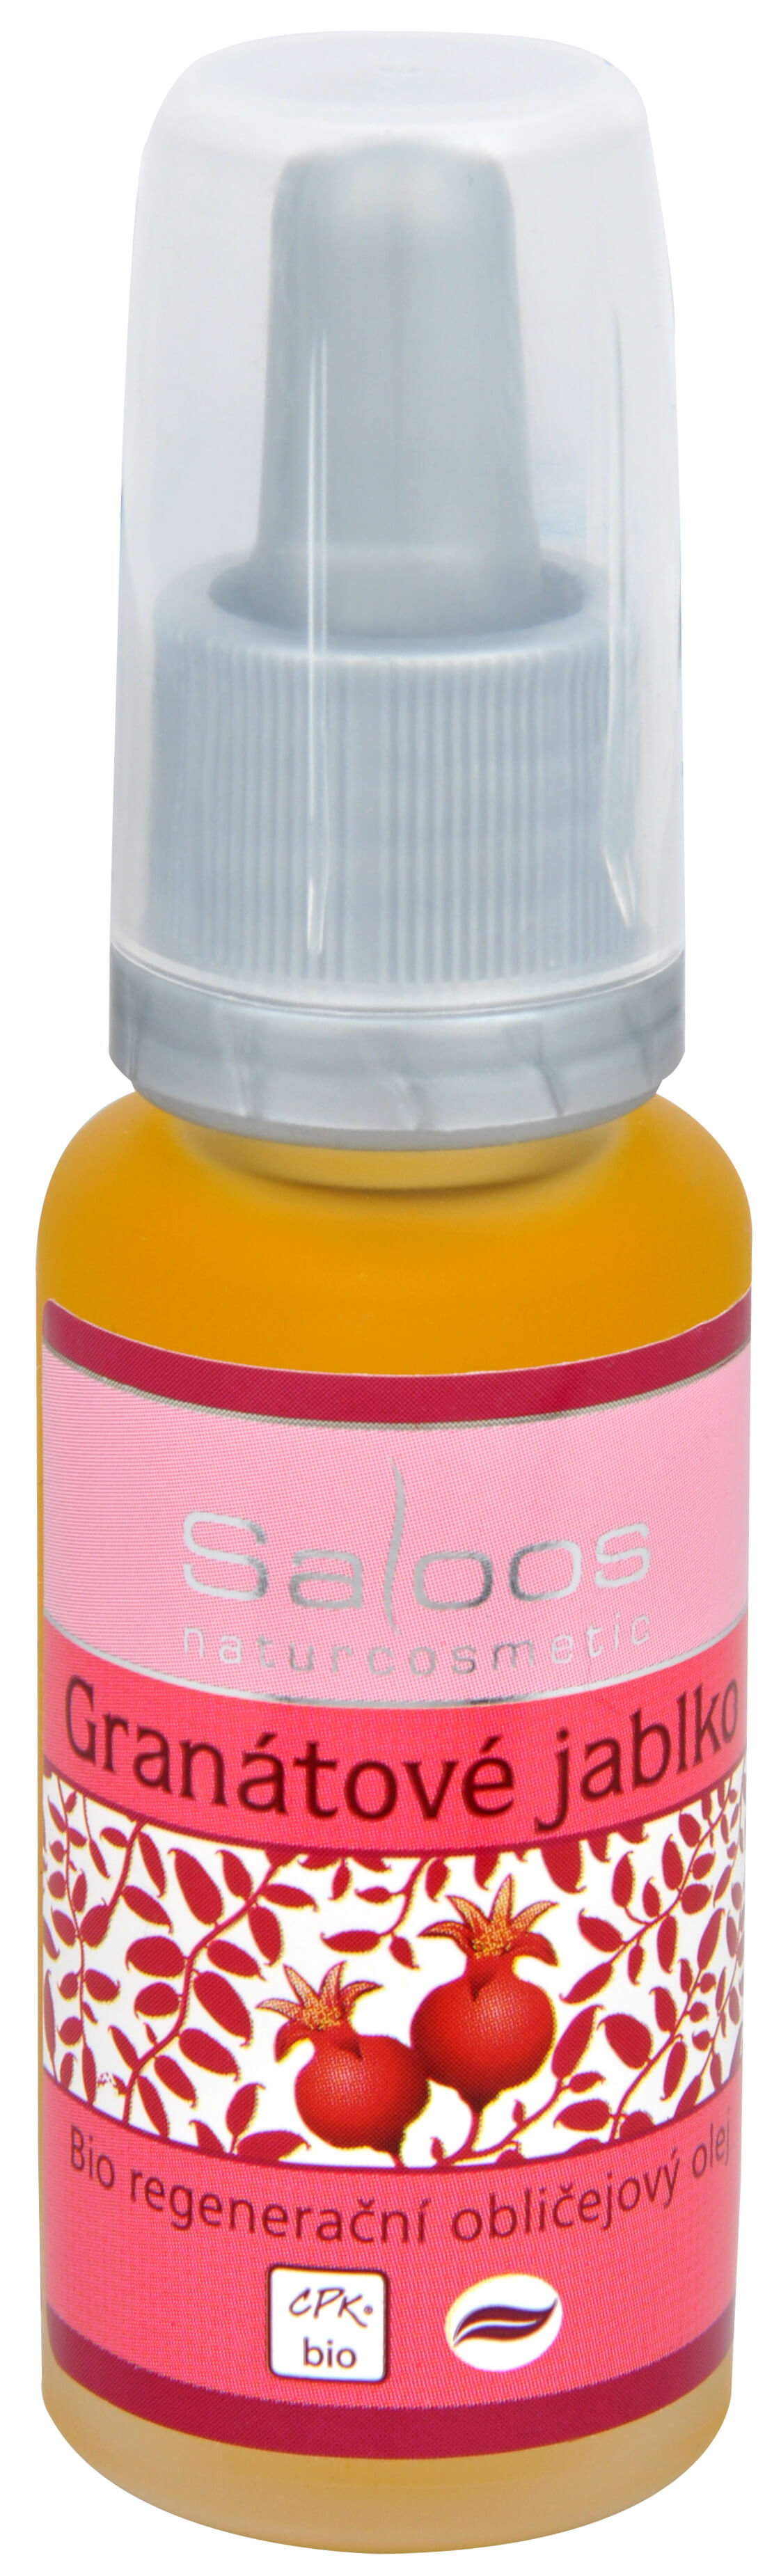 Zobrazit detail výrobku Saloos Bio regenerační obličejový olej - Granátové jablko 20 ml